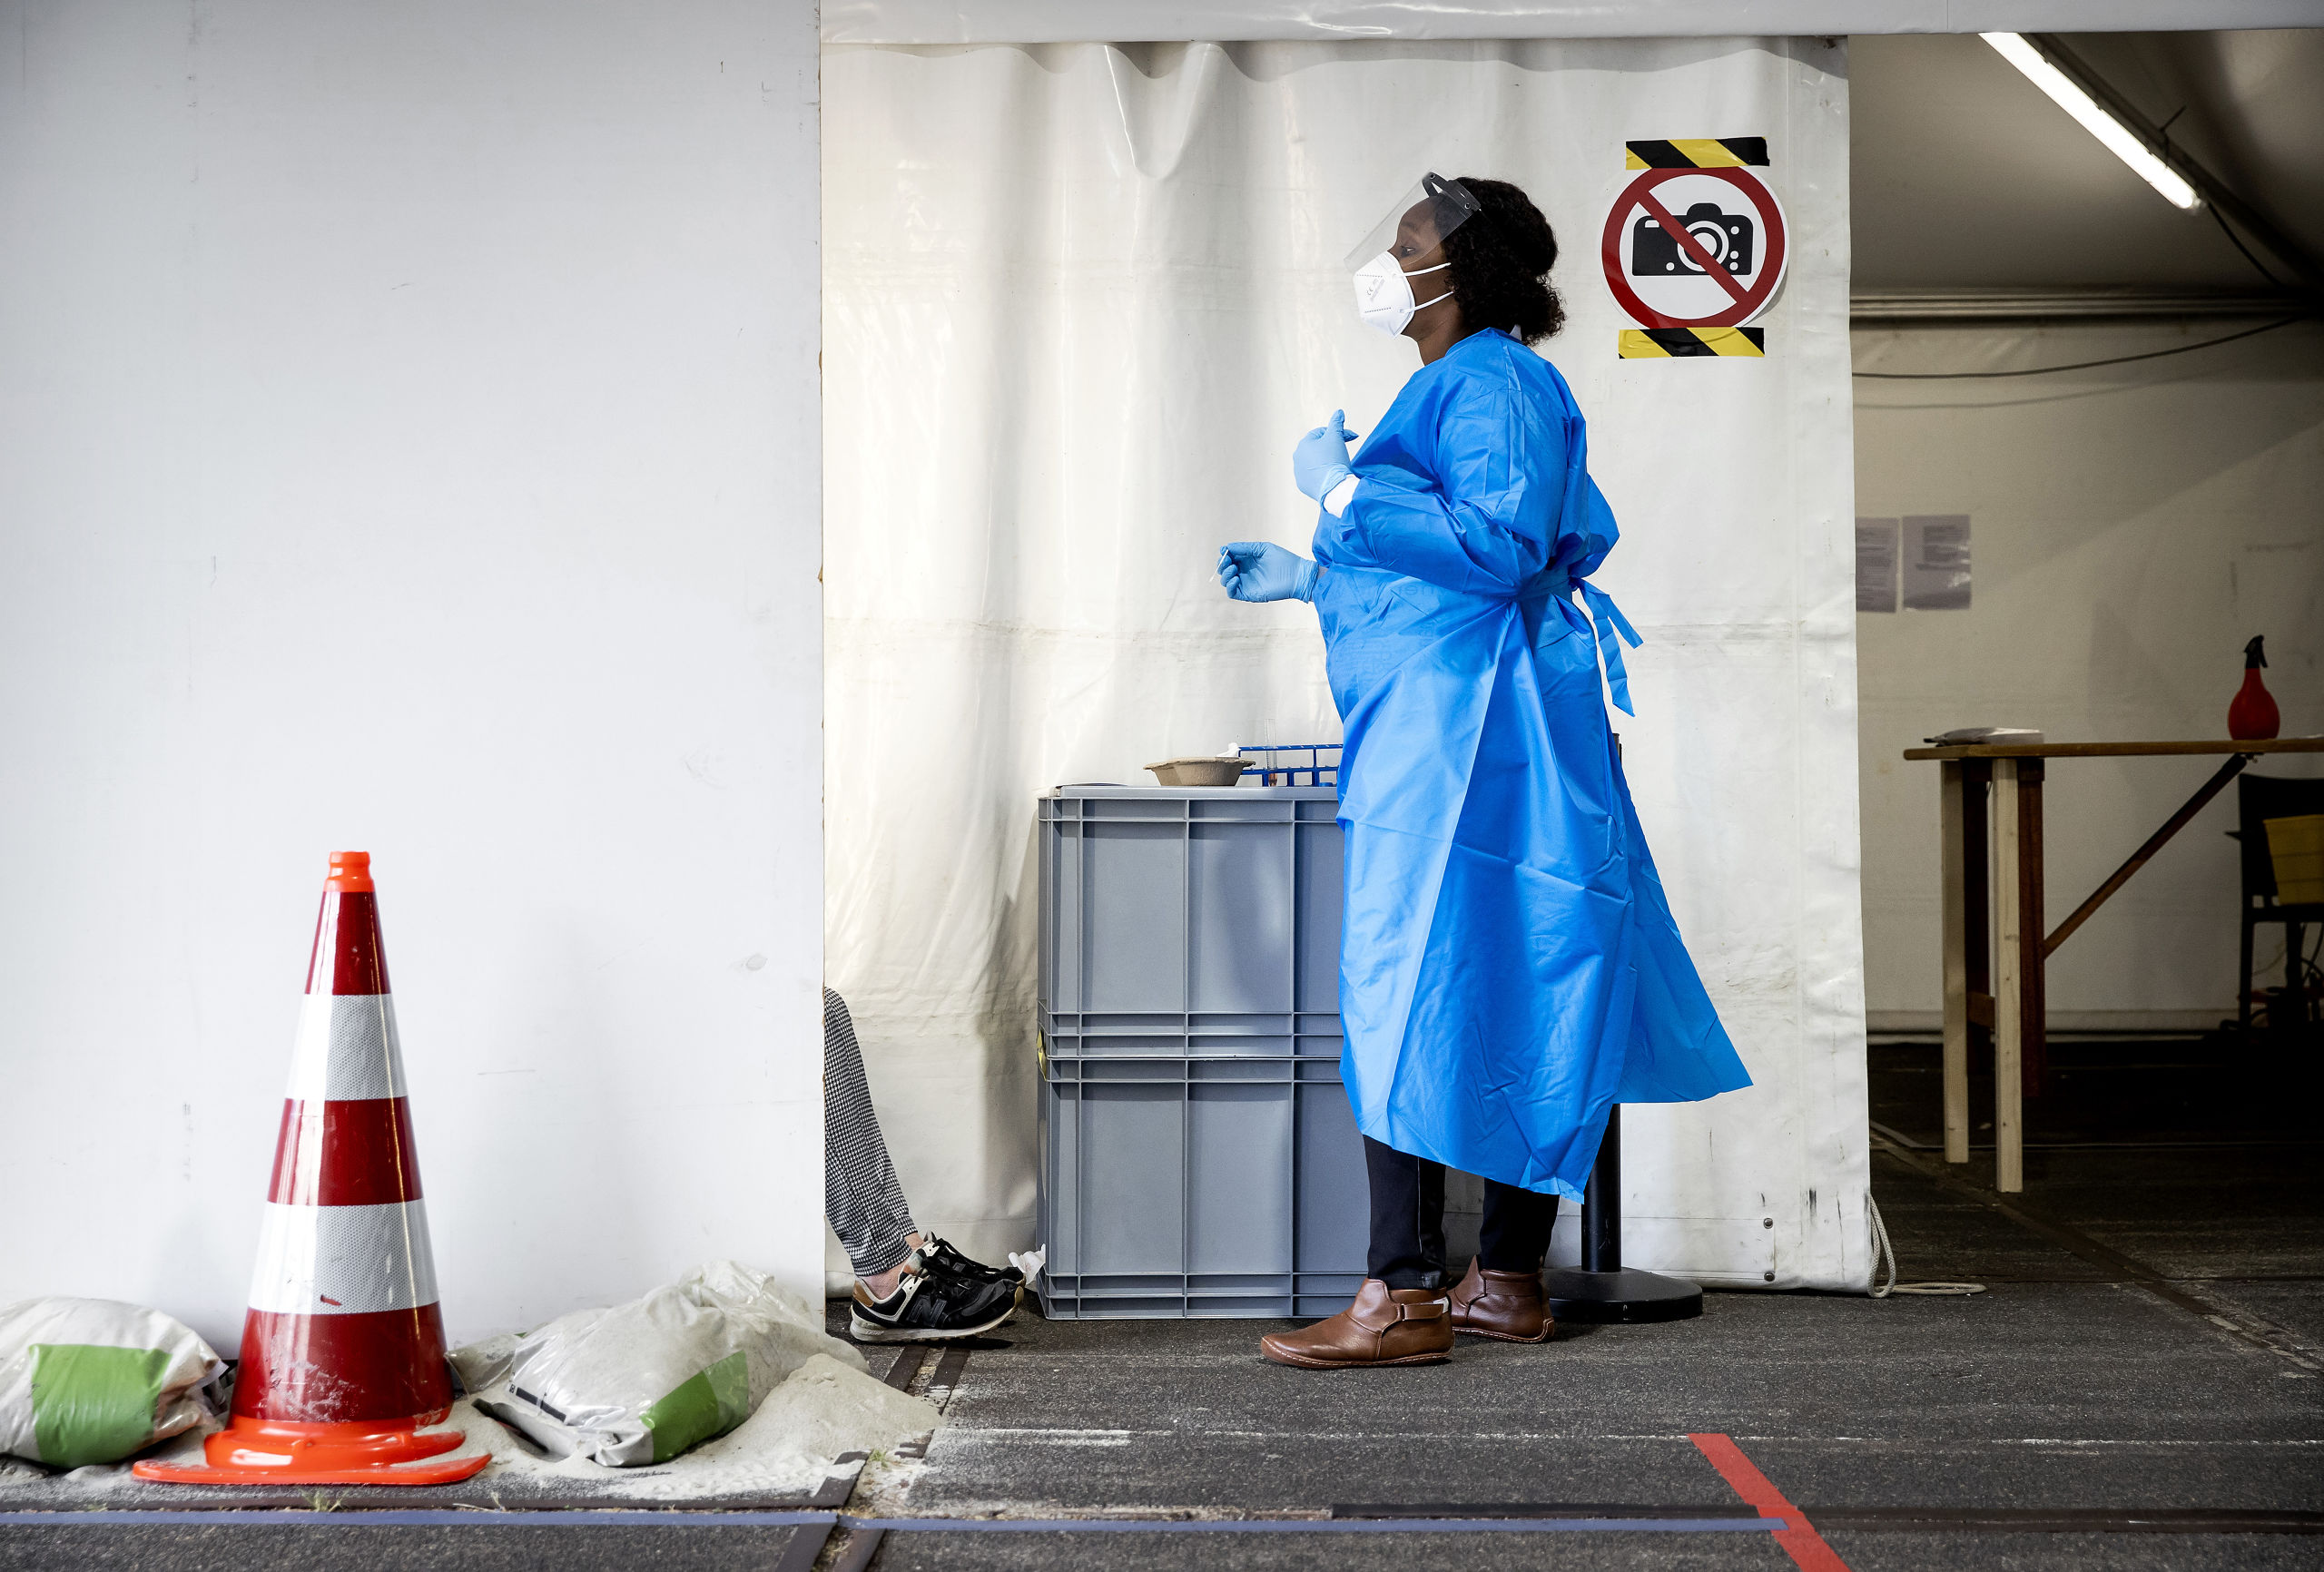 2020-07-29 11:27:19 ROTTERDAM - Een medewerker van de GGD Rotterdam-Rijnmond neemt een coronatest af in een teststraat. Het aantal besmettingen met het coronavirus blijft toenemen. In de regio Rotterdam-Rijnmond stijgt het aantal nieuwe patienten het meest. ANP KOEN VAN WEEL